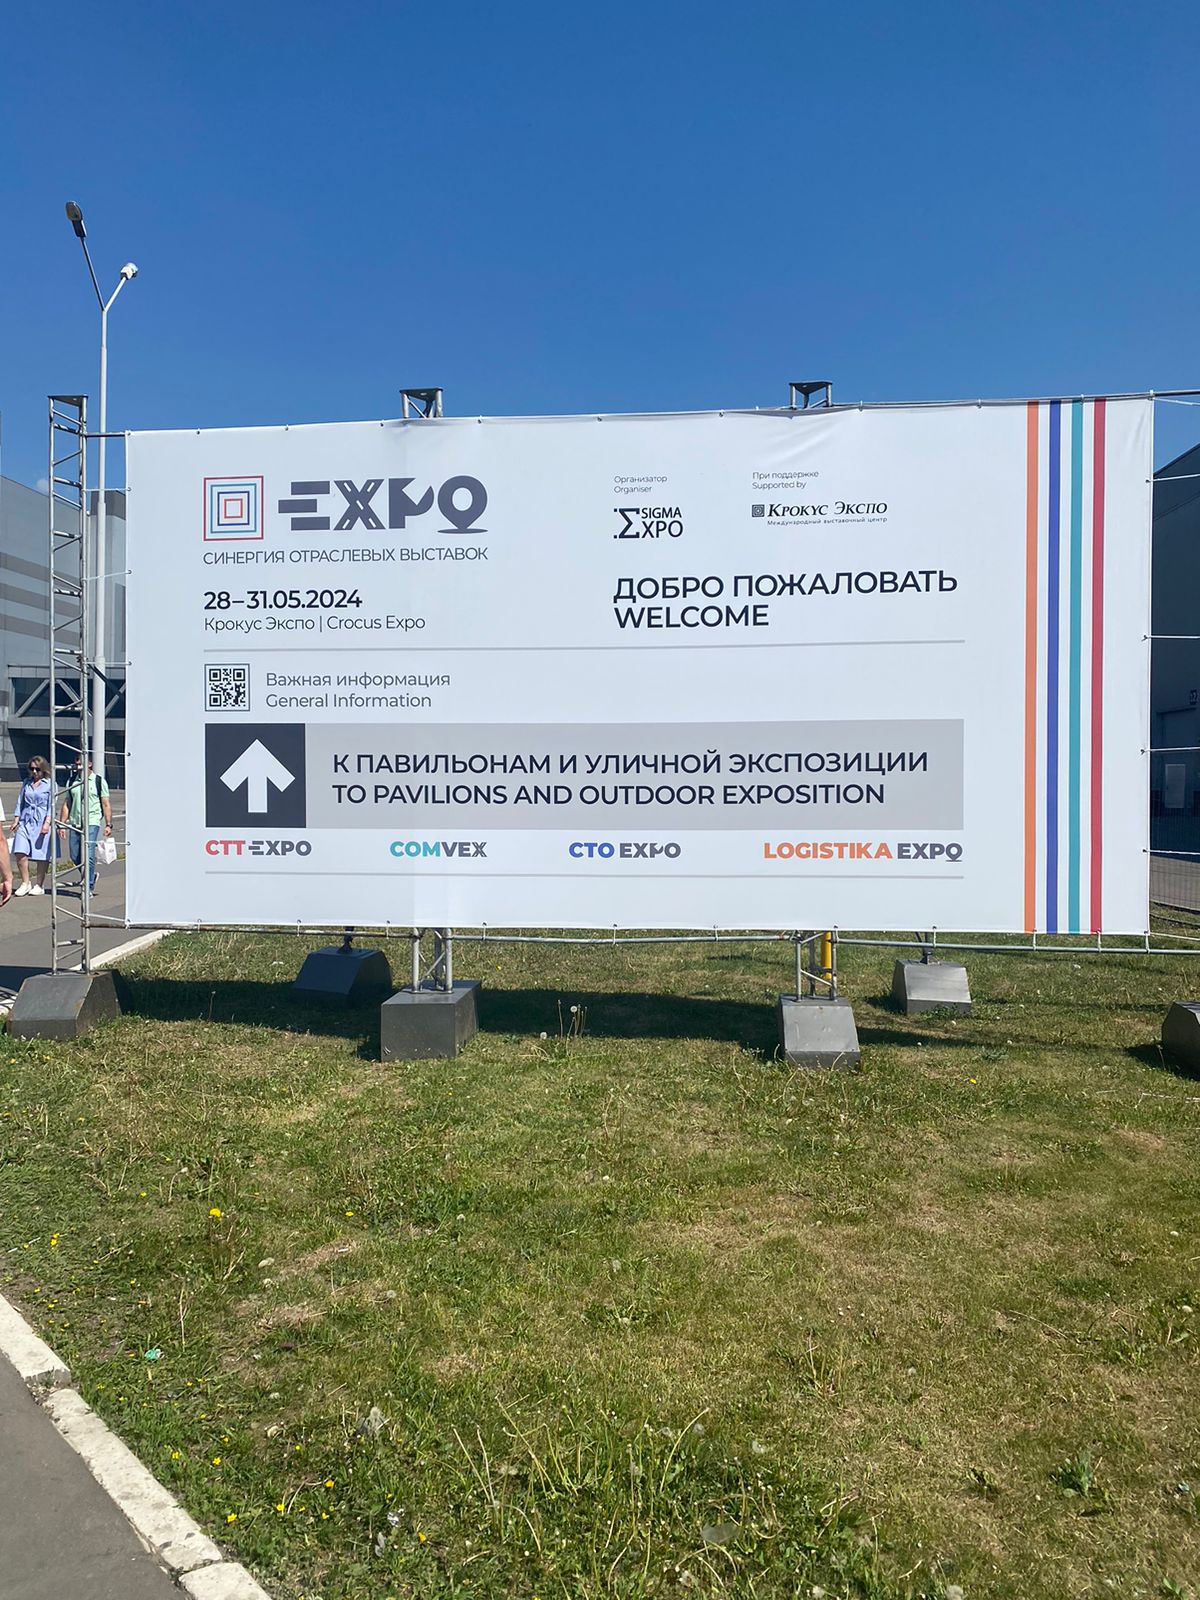 с 28 по 31 мая в Крокус Экспо (г. Москва) прошло самое крупное отраслевое выставочное мероприятие в России EXPO